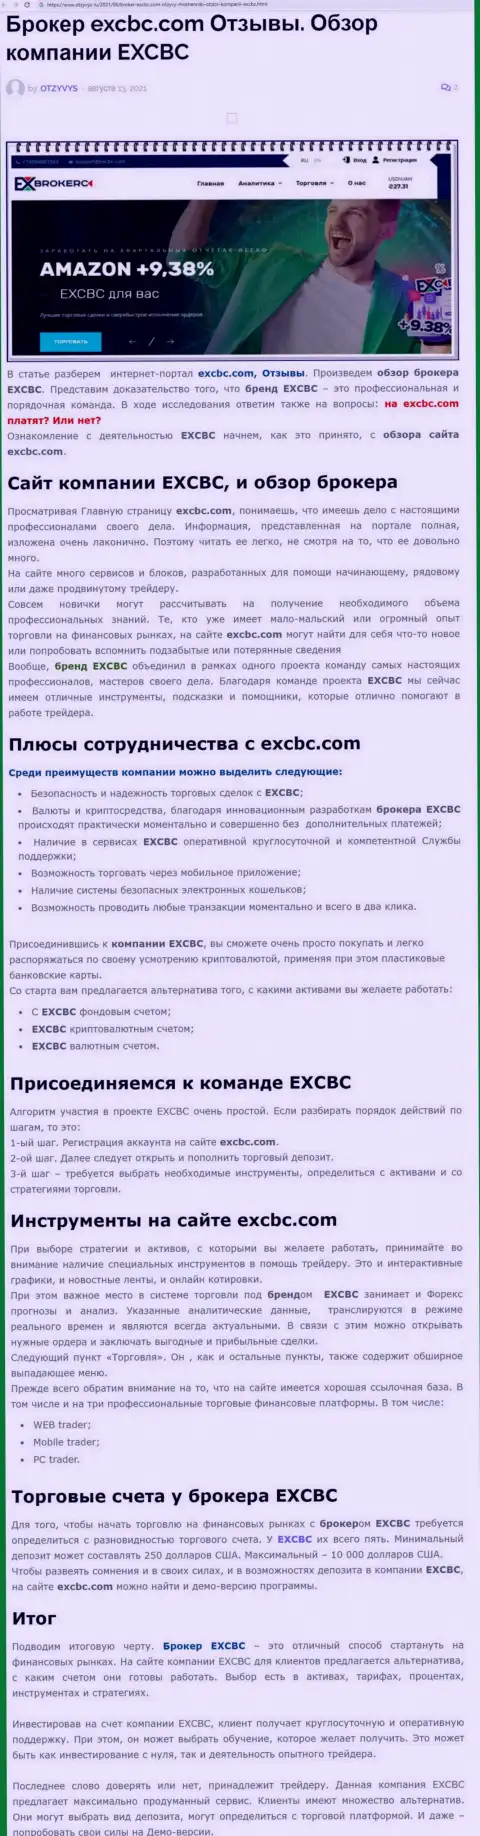 EXCBC - честная и надежная Форекс организация, это следует из информационной статьи на сайте Отзывс Ру